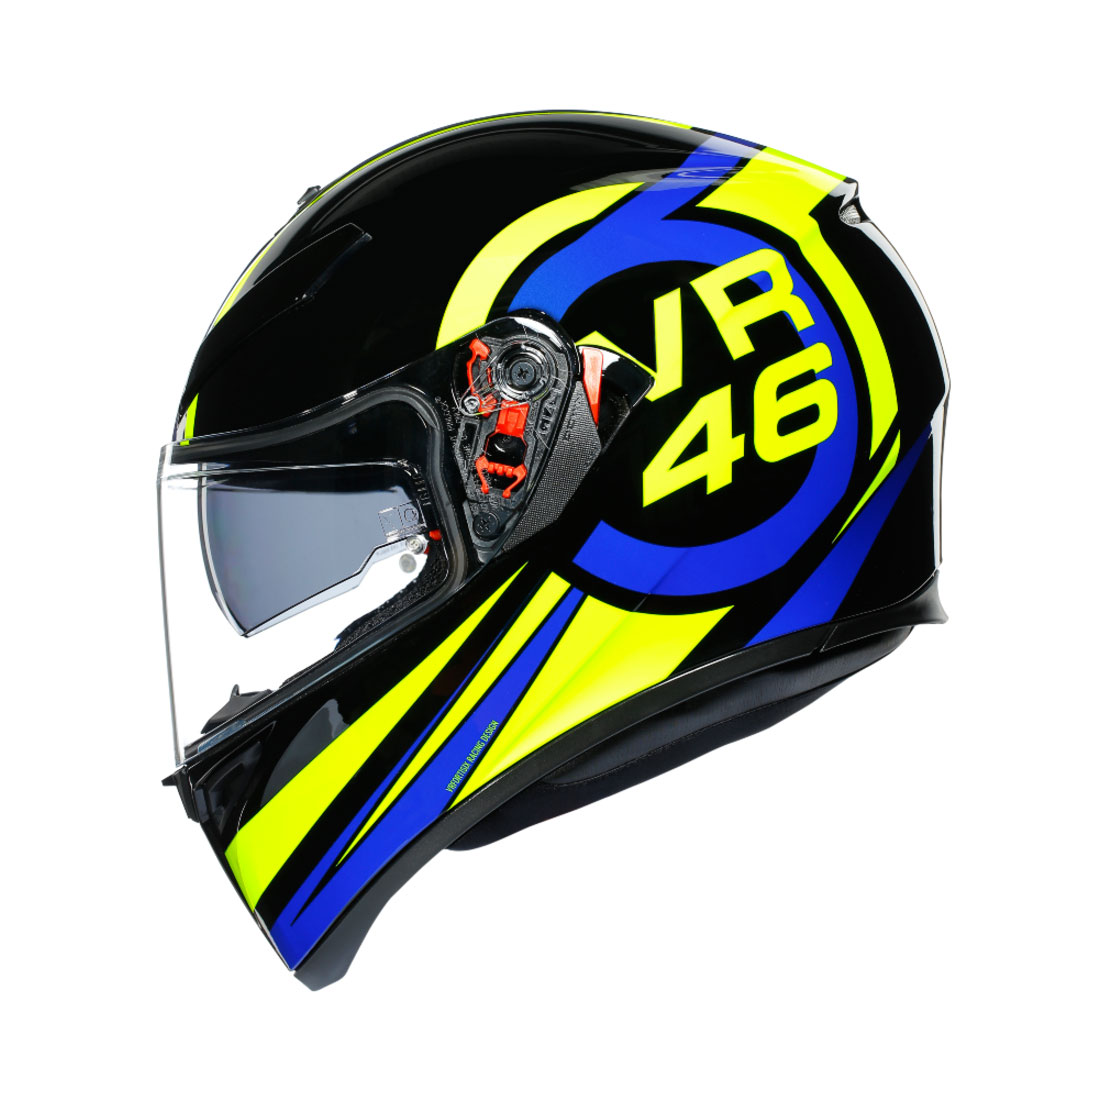 K3 SV JIS TOP - RIDE 46 | AGV ヘルメット